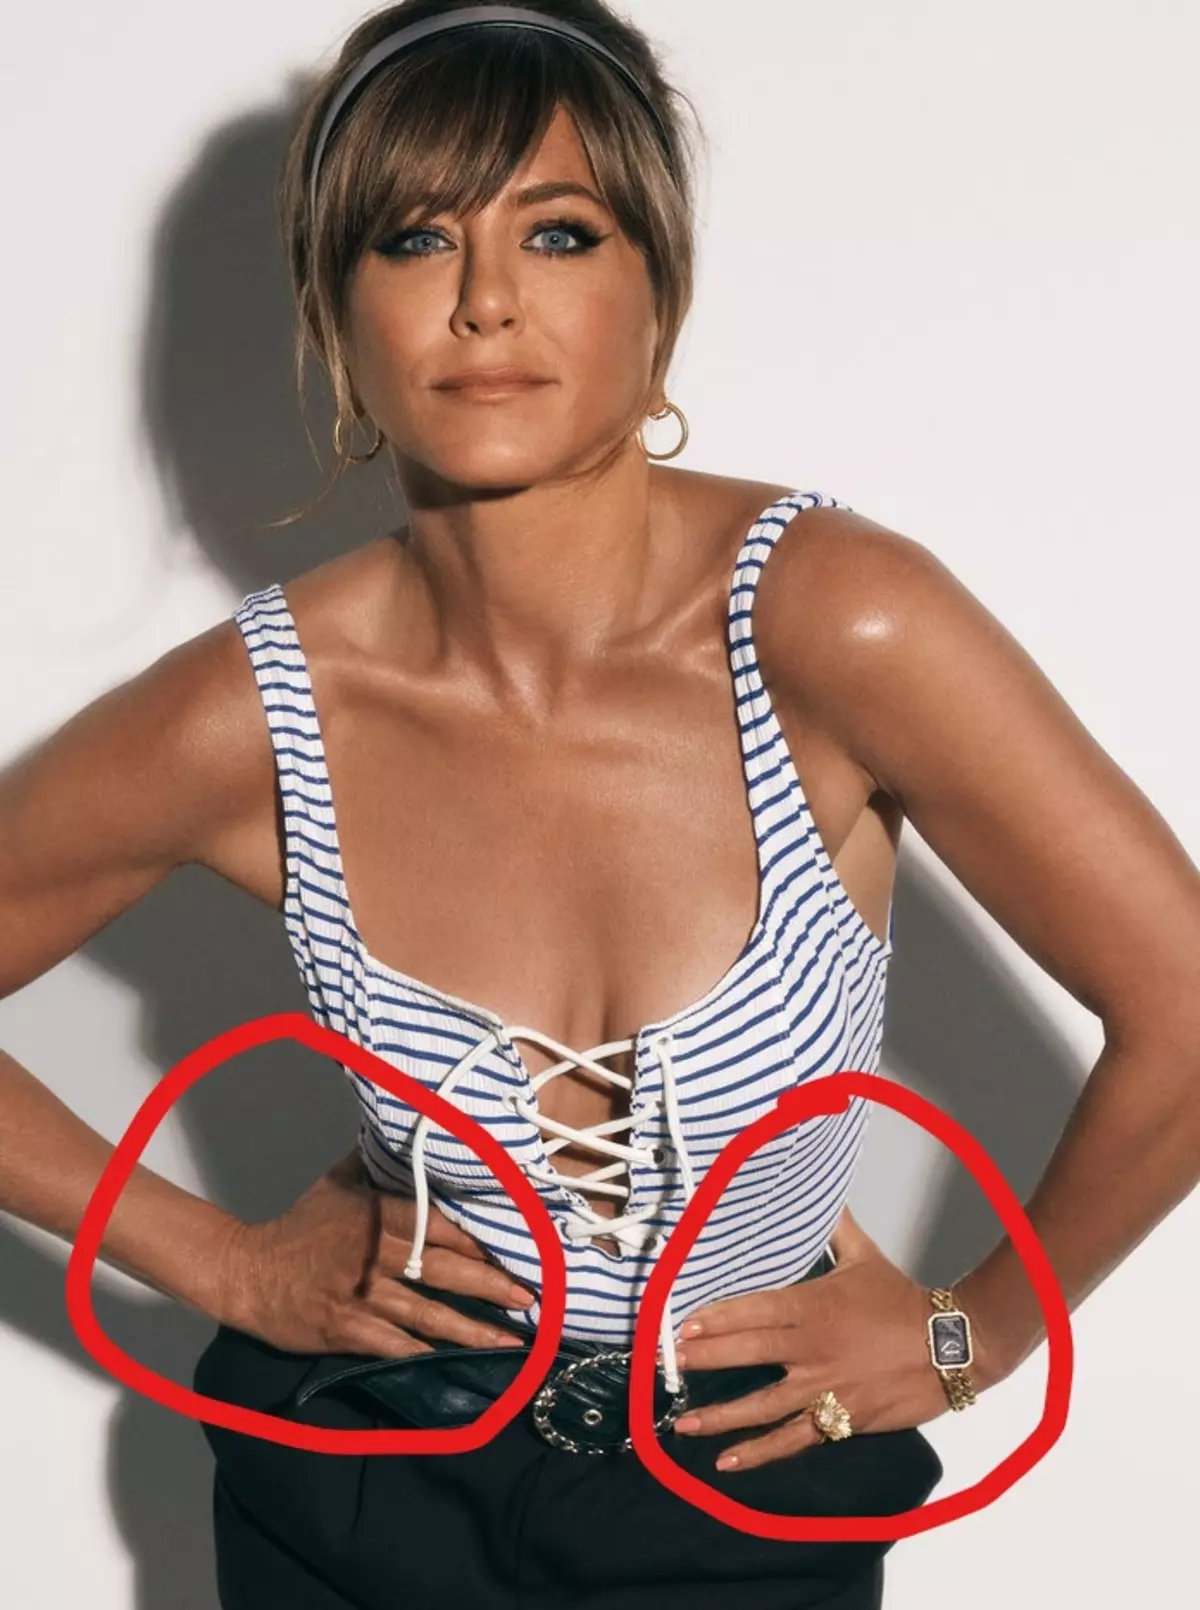 Không quan tâm? Bìa của một độ bóng với Jennifer Aniston chỉ trích cho Photoshop và phân biệt chủng tộc 86088_5